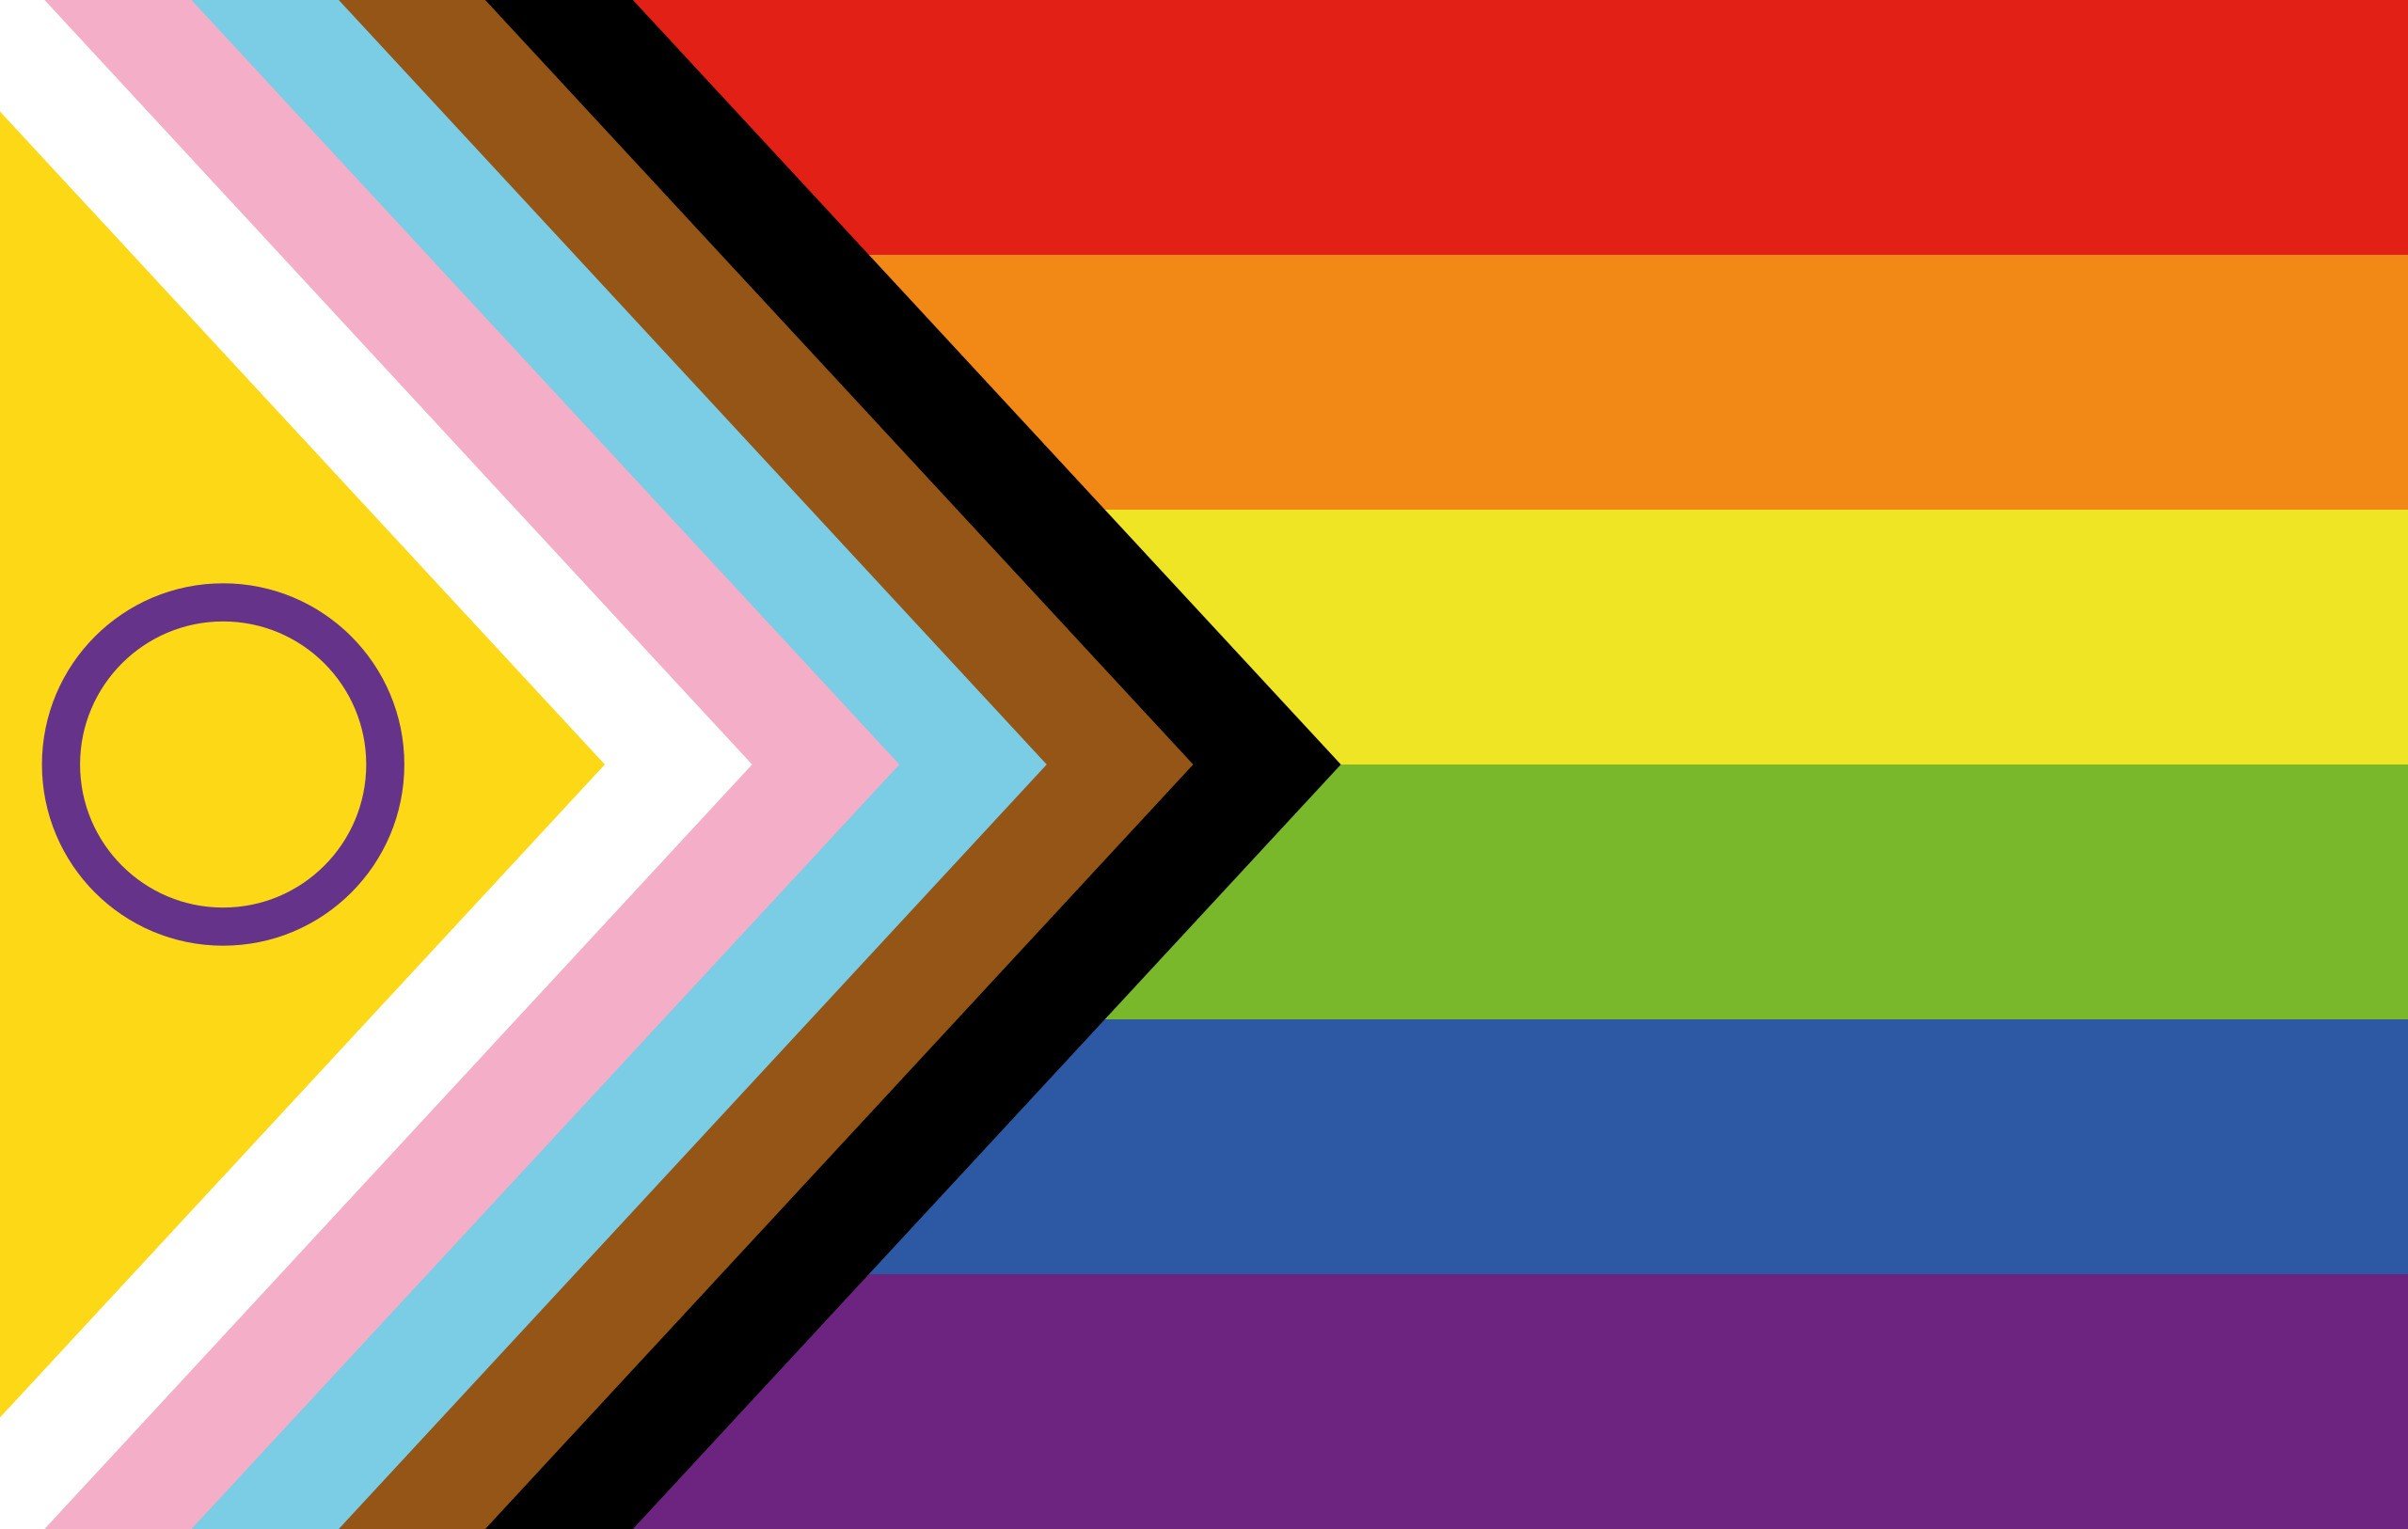 Nova bandeira LGBTQQICAPF2K+ que inclui as cores símbolo da bandeira intersexo e da representação racial - Foto: Reprodução